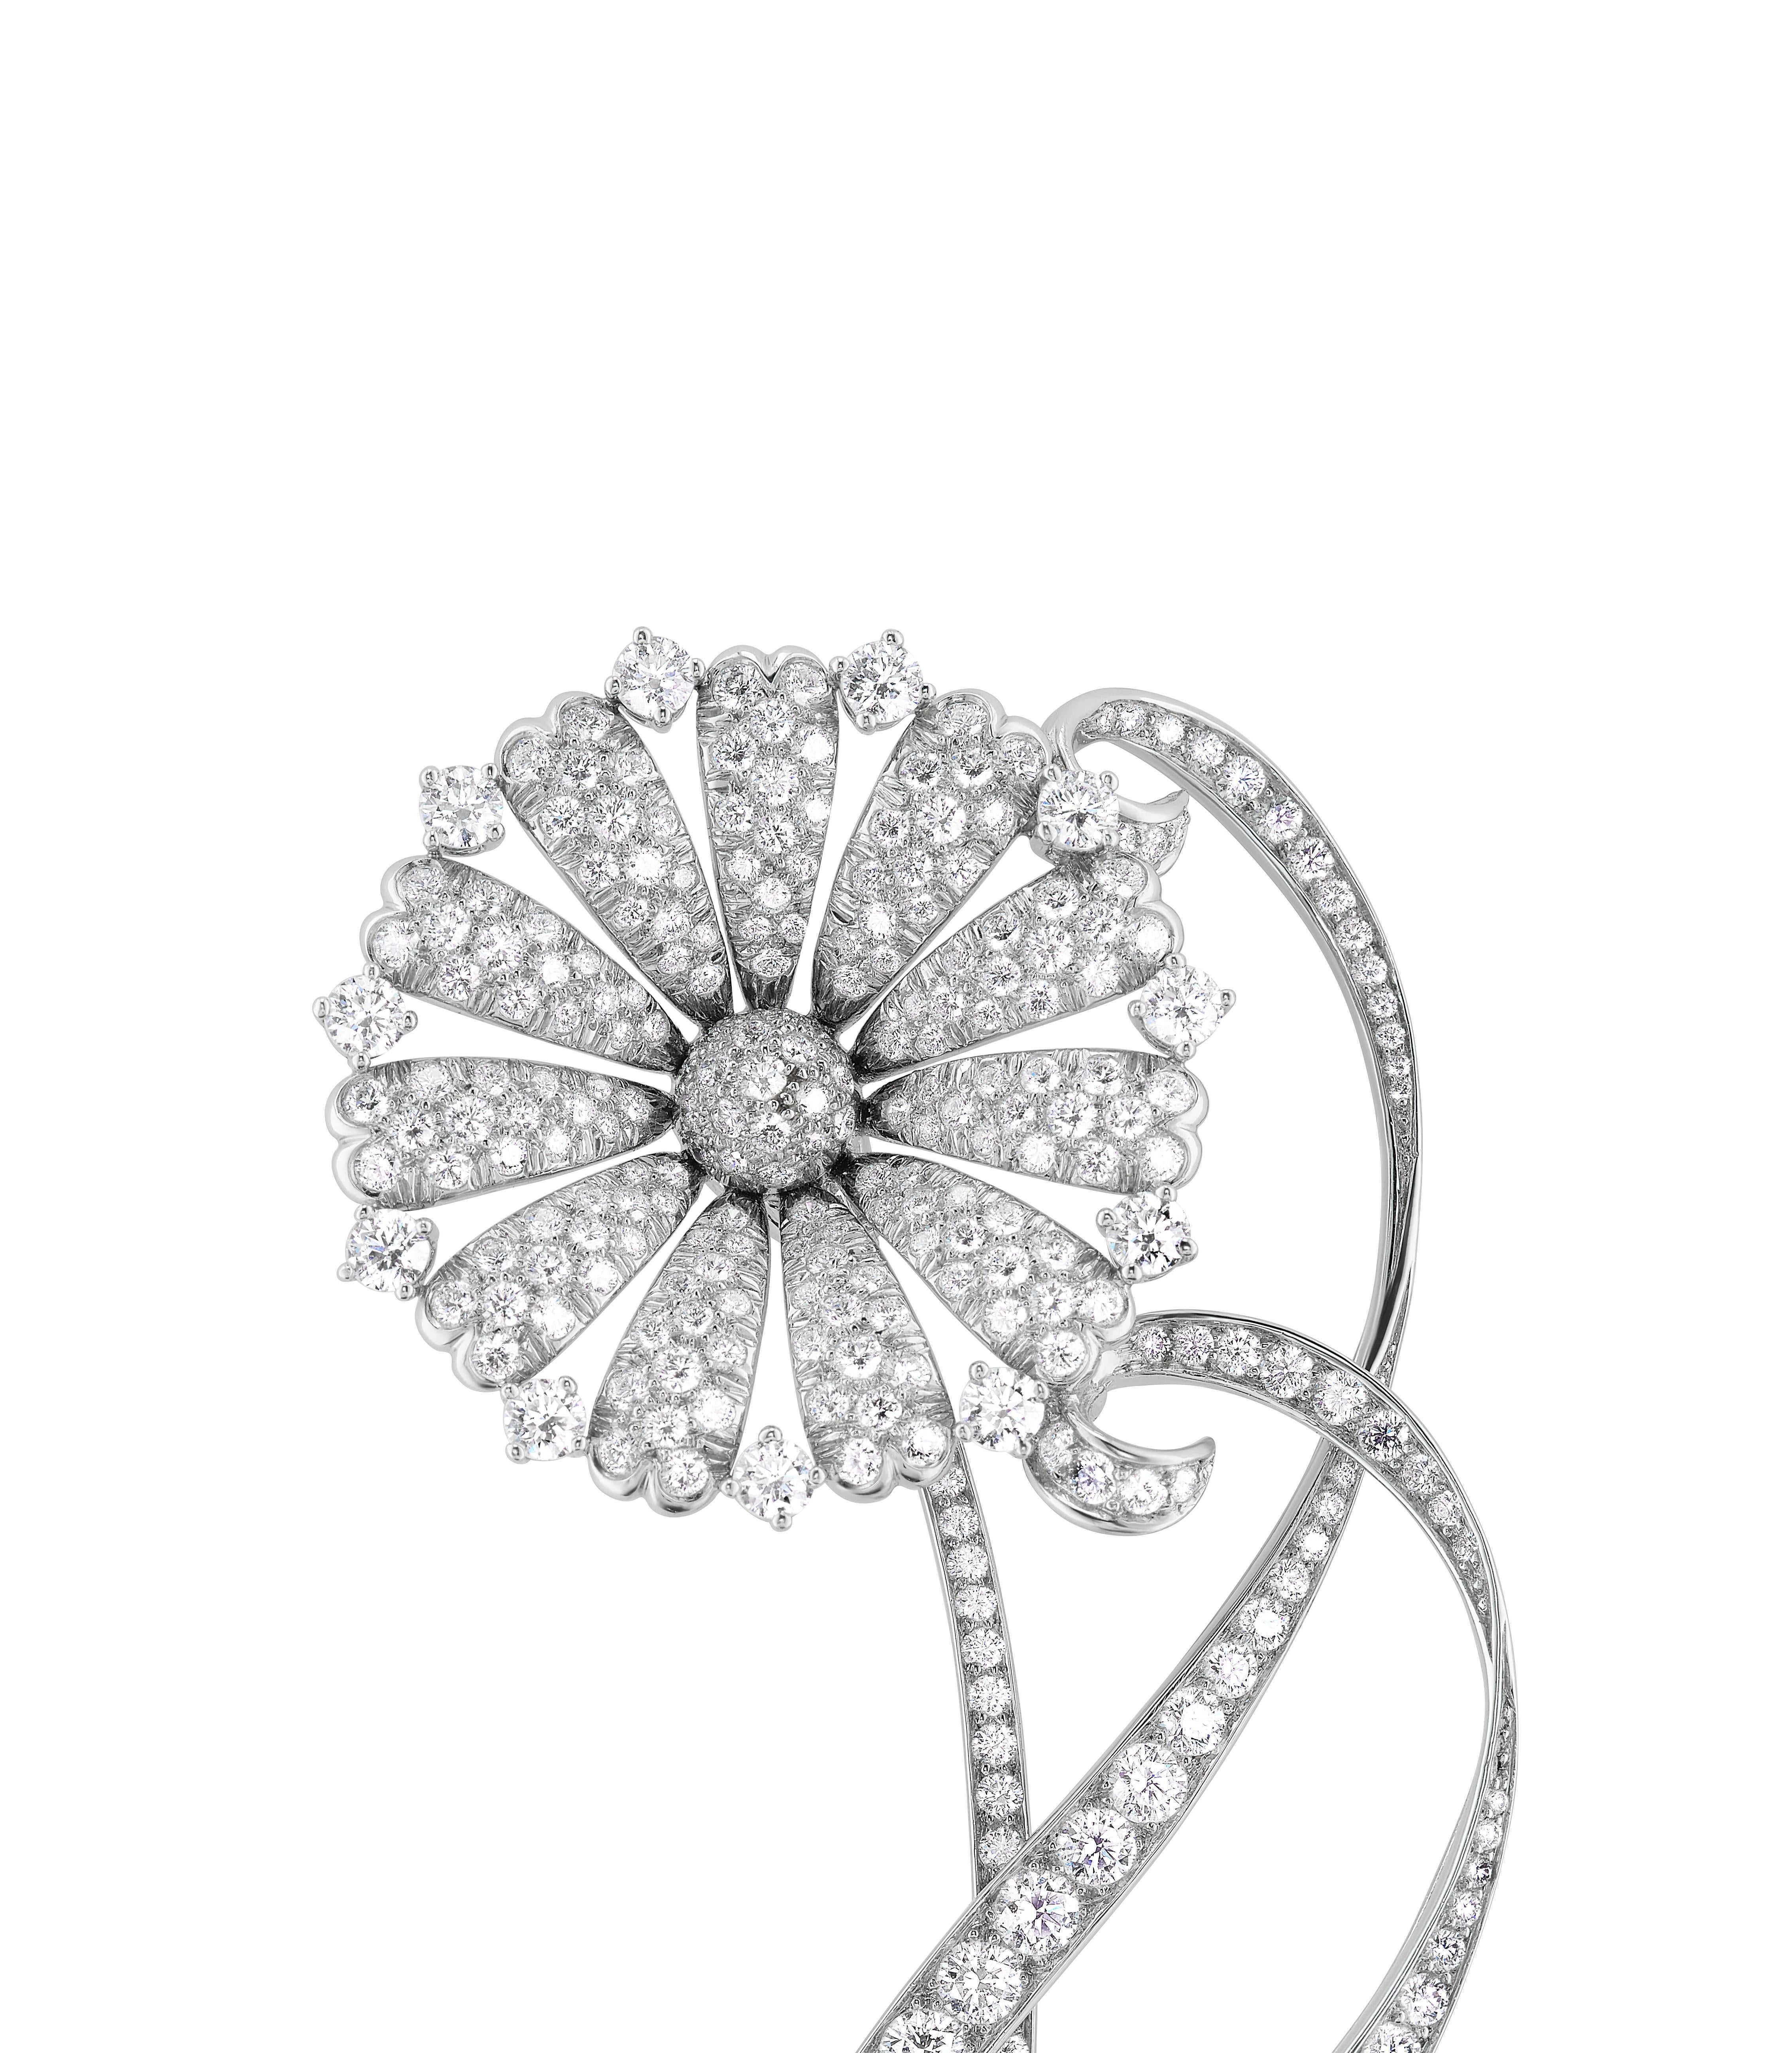 Cette exquise pièce de Tiffany & Co. La broche Archival Daisy contient des diamants ronds et brillants pesant approximativement 6,38 carats au total, sertis dans du platine. Au-delà de sa taille impressionnante, il existe une fluidité et une